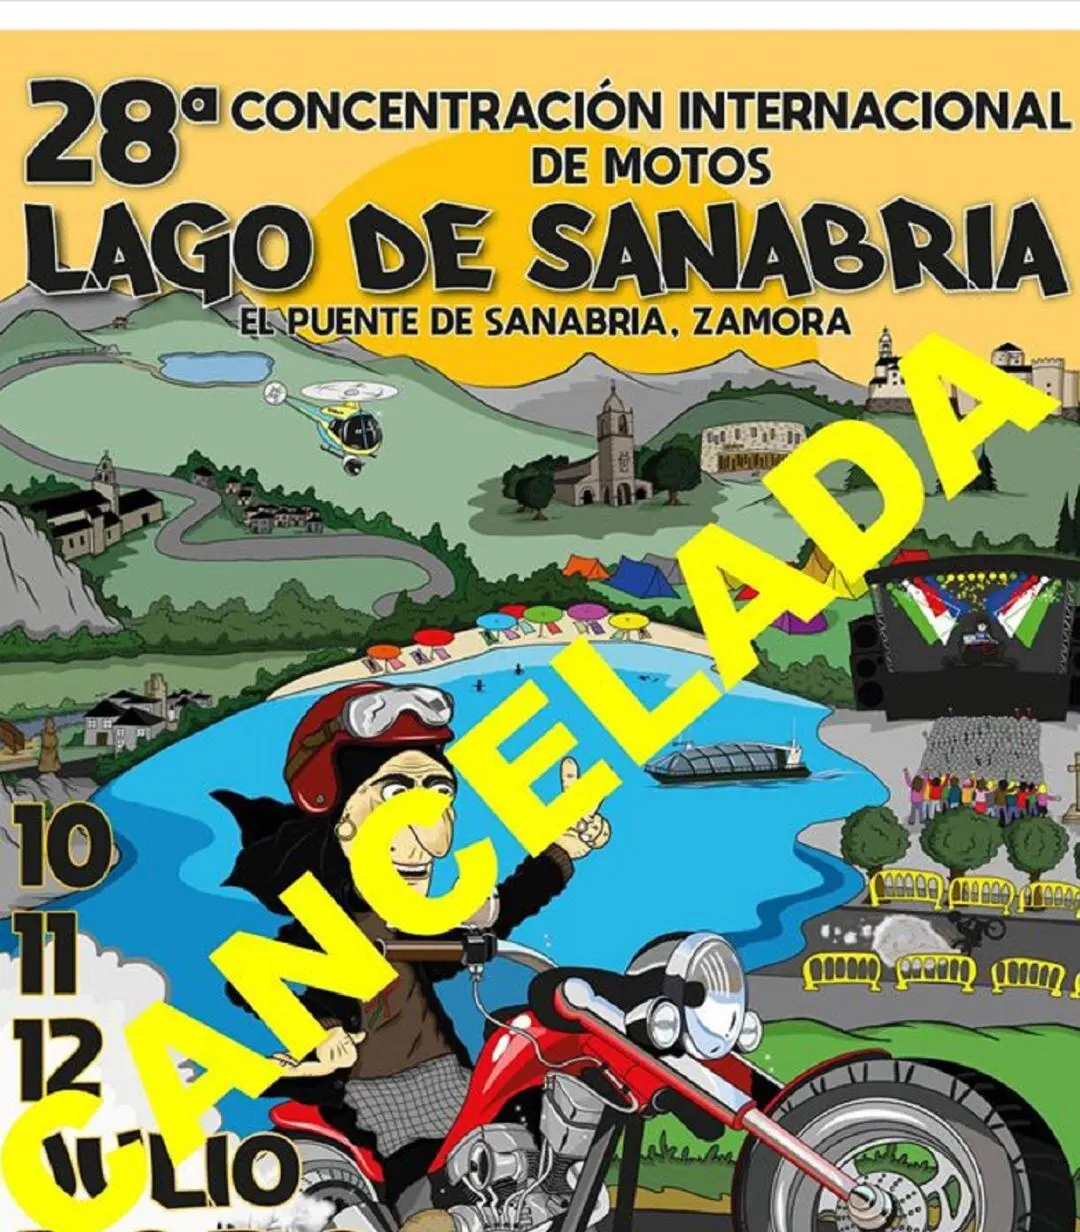 sanabria motos - Cuándo son las motos en Sanabria